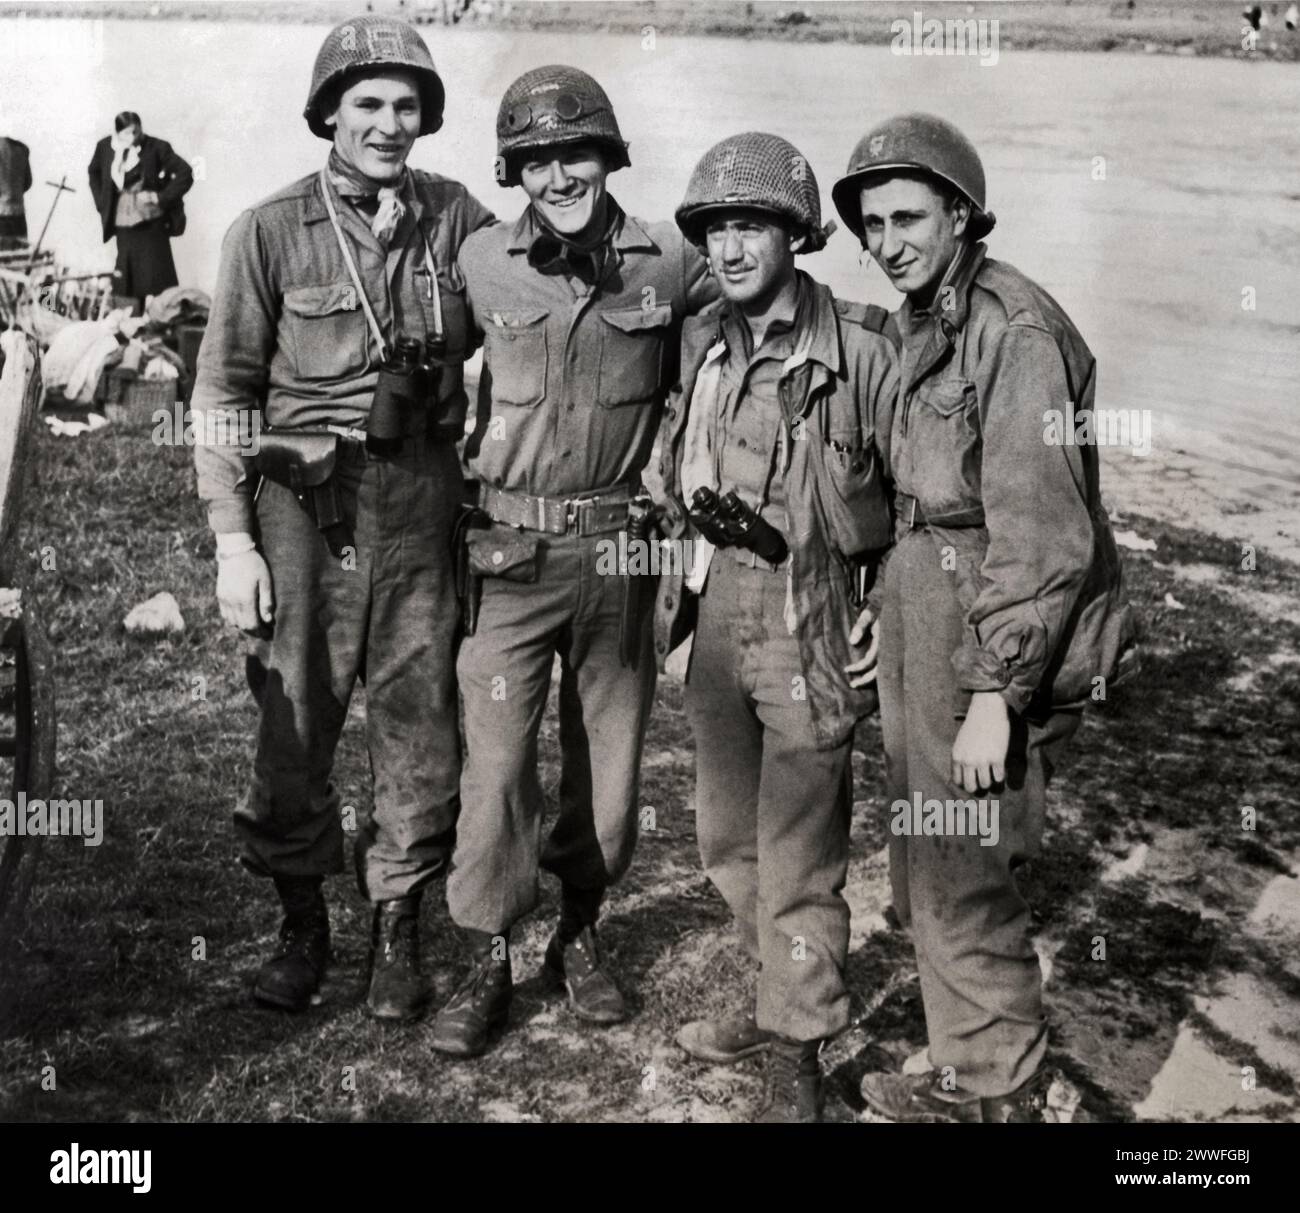 Torgau, Deutschland, 4. Mai 1945 diese Yankee-Soldaten des 1. Bataillons, 273. Infanterie der 69. Division, erste US-Armee, waren unter den Ersten, die die heranrückenden russischen Soldaten begrüßten, da die beiden alliierten Armeen in Torgau an der Elbe verbunden waren. Sie sind von links nach rechts; PFC Frank B. Huff Washington, VA.; CPL. James J. McDonnell, Peabody, Mass.; Lieut. William D. Robertson, Los Angeles, Kalifornien, und PFC Paul Staus, Bronx, N.Y. Stockfoto